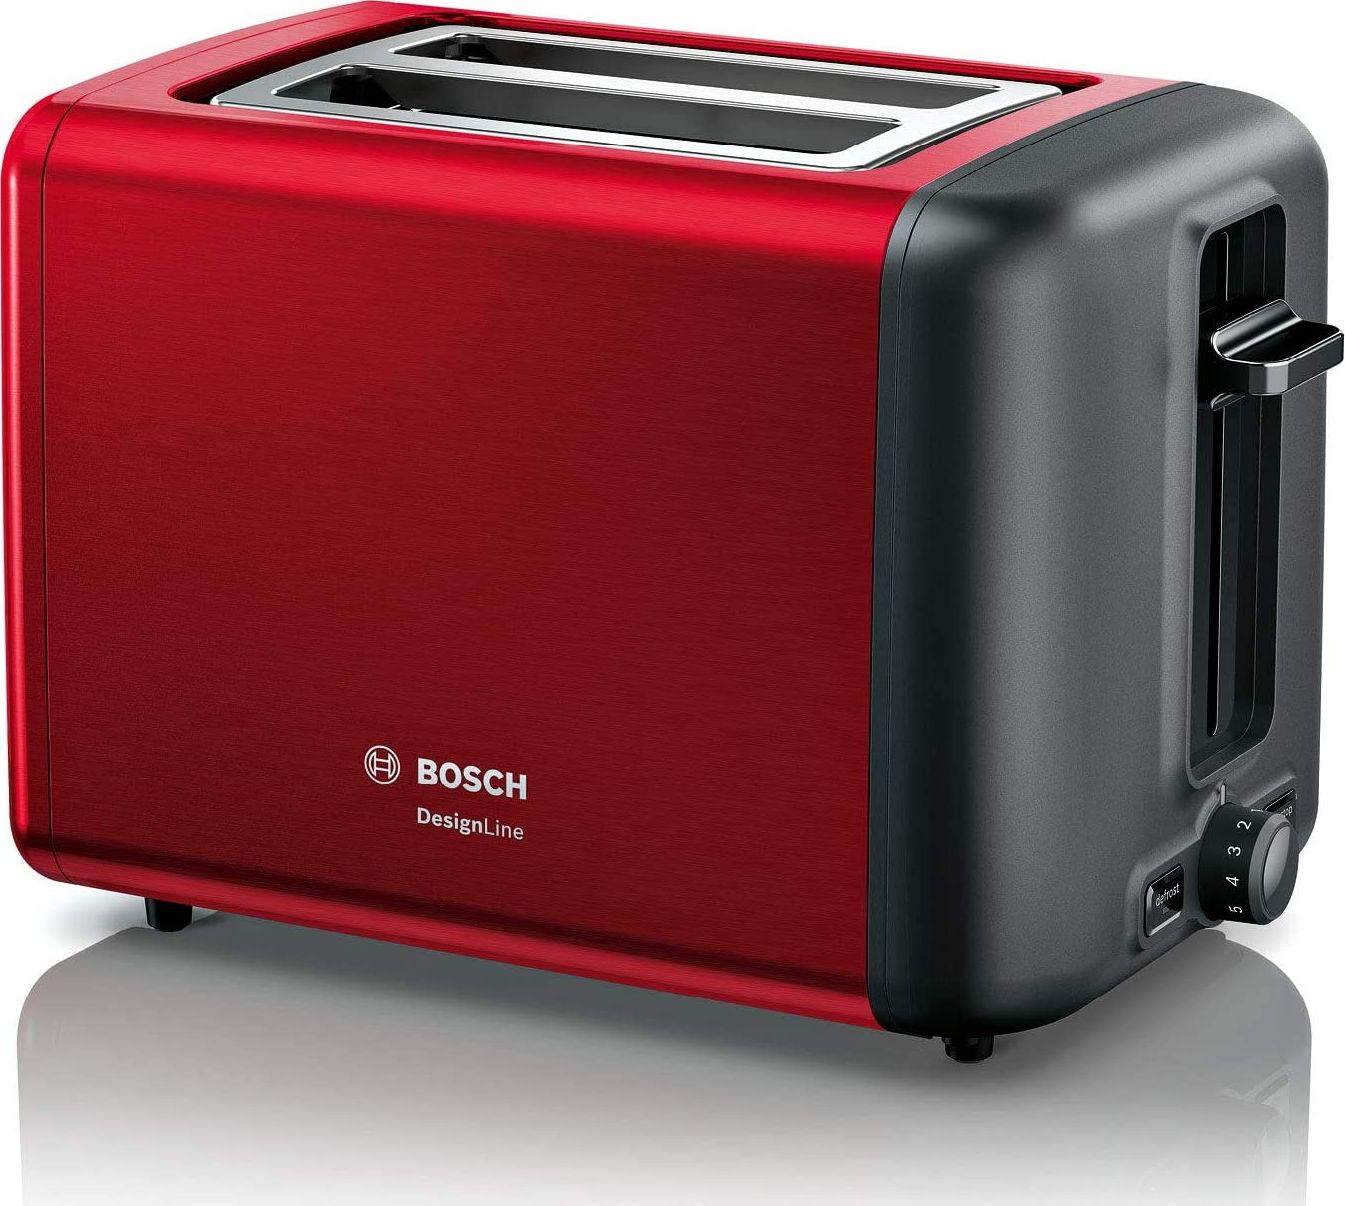 Toster Bosch Bosch TAT3P424DE DesignLine kompaktowy toster, funkcja rozmrażania / podgrzewania, chowana nasadka do bułek, automatyczne wyłączanie, 970 W, czerwony